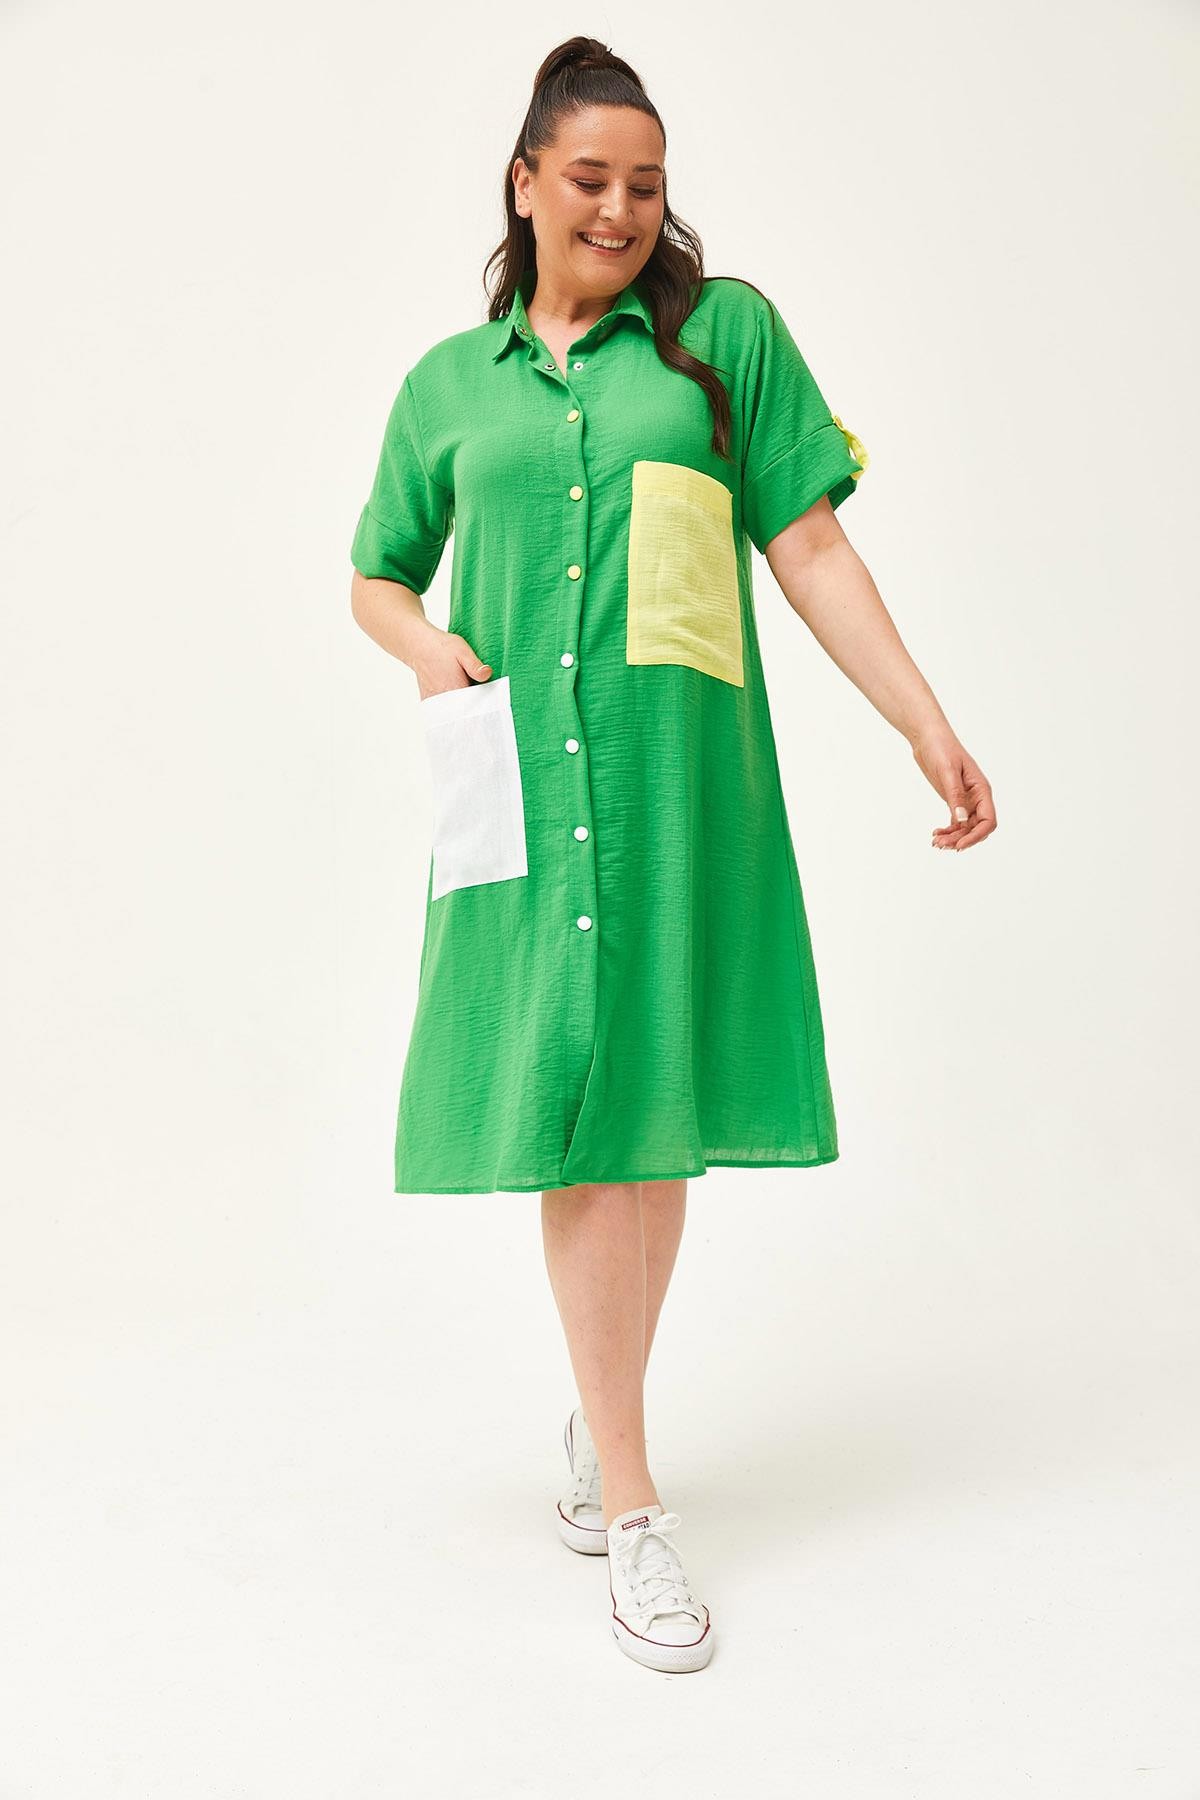 Kadın Büyük Beden Renkli Cep Detaylı Keten Gömlek Elbise - Yeşil